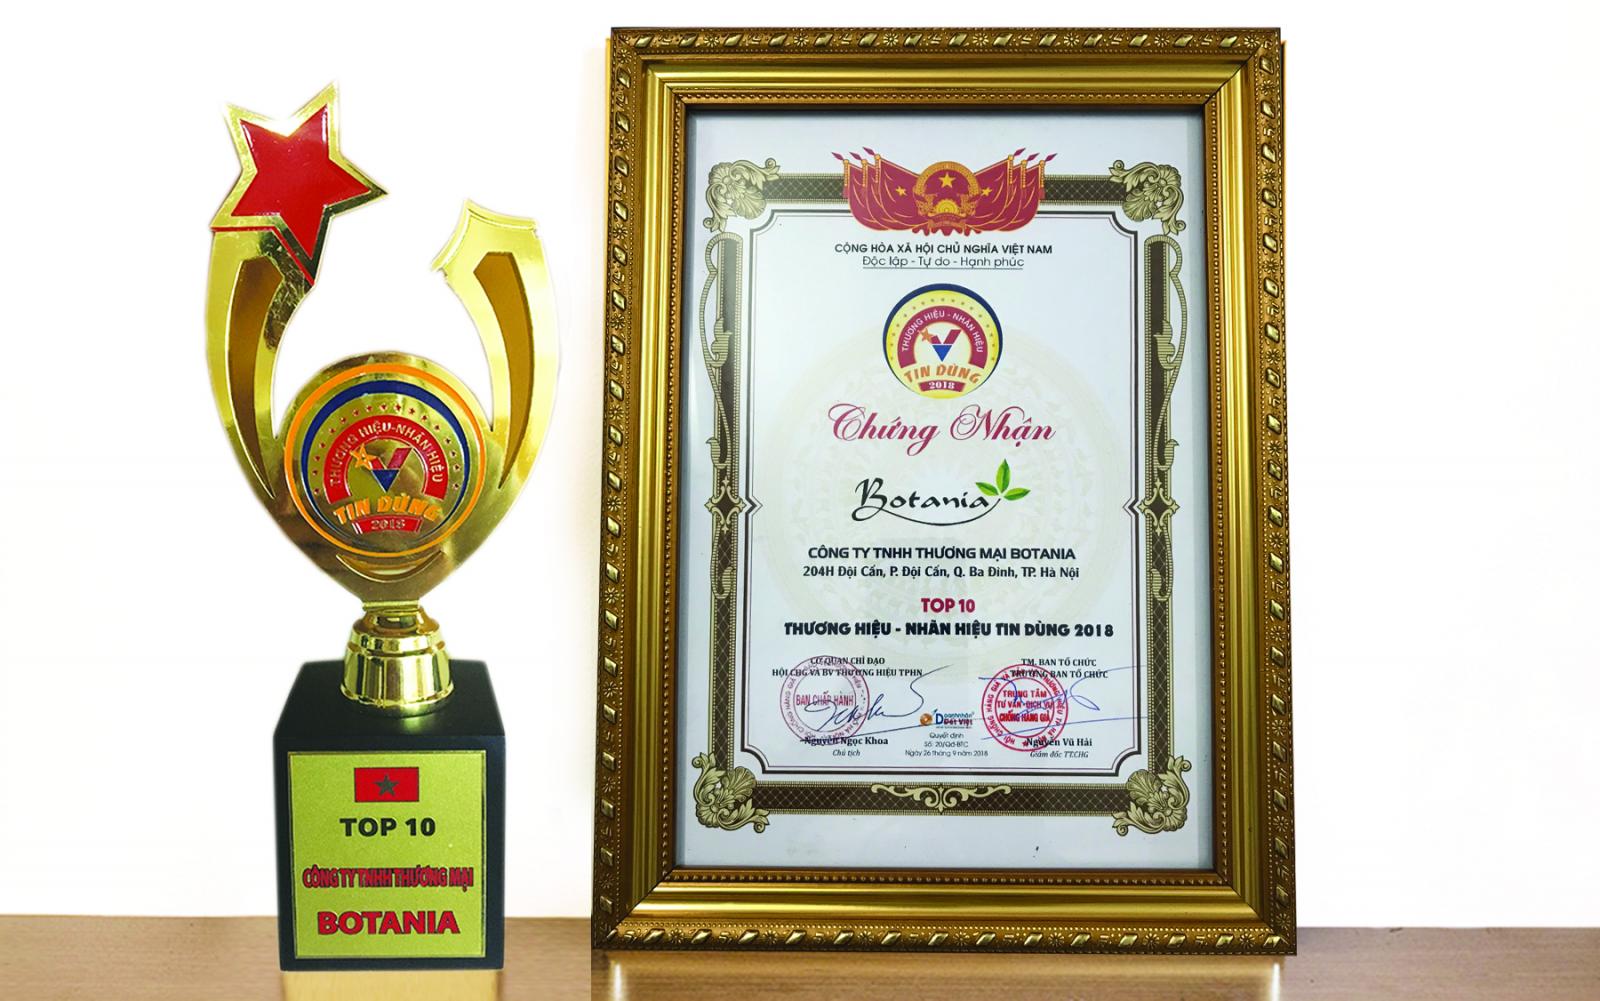 Công ty Botania vinh dự được nhận giải thưởng TOP 10 - Thương hiệu